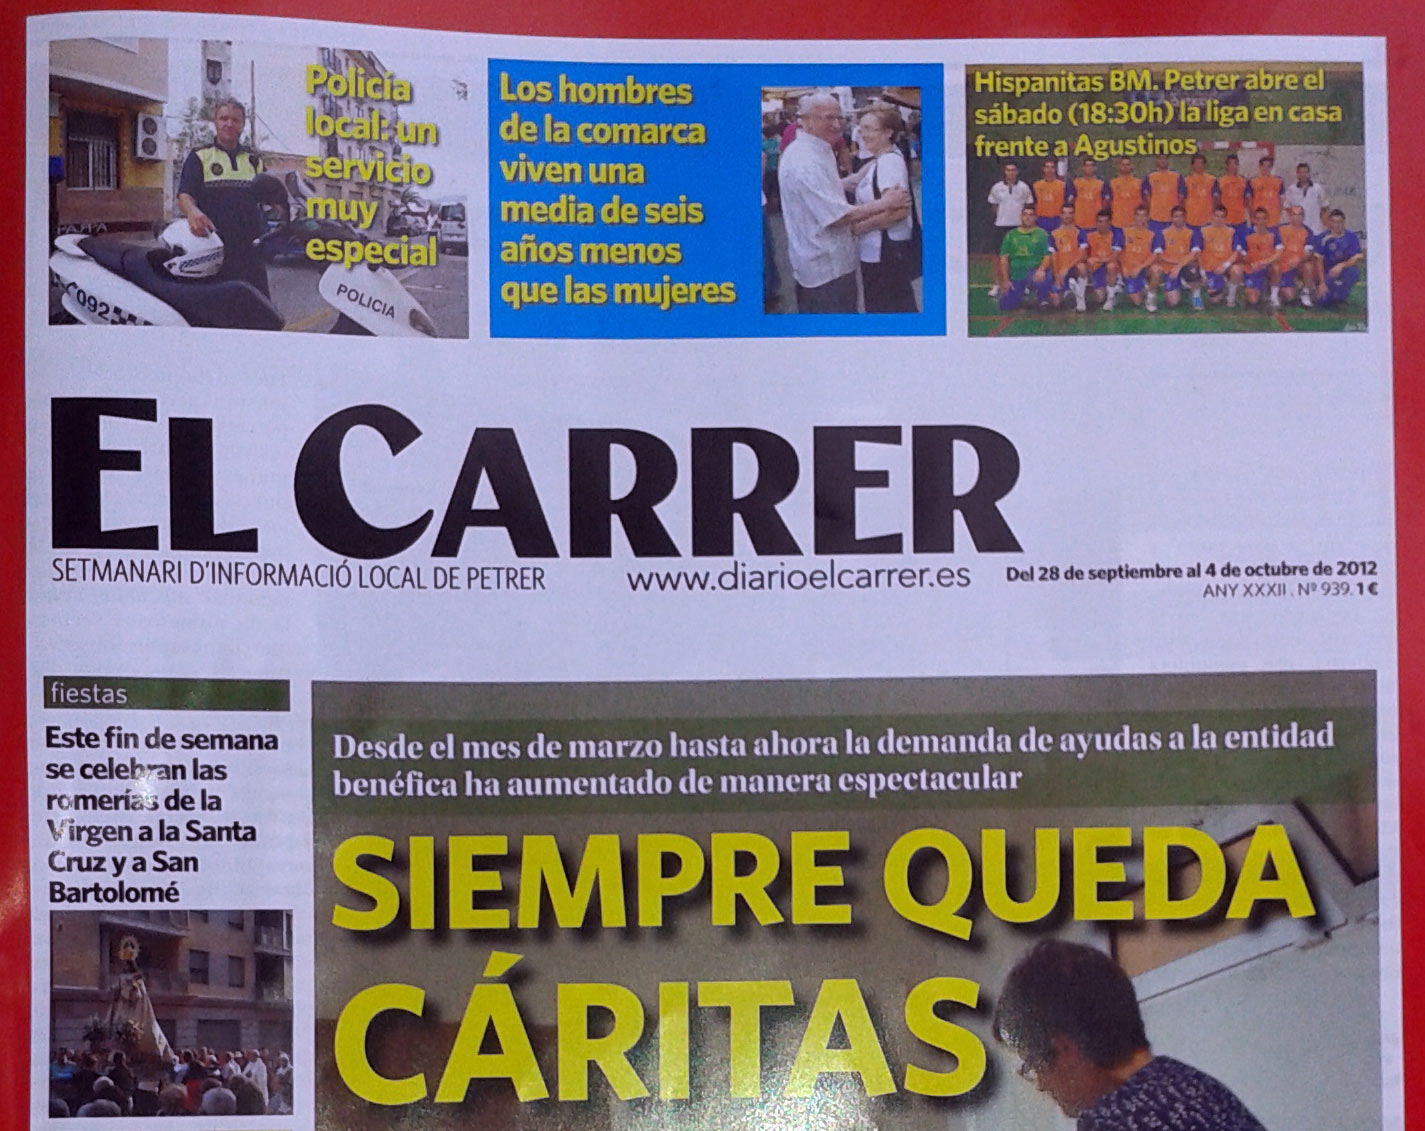 El Carrer de esta semana lleva en su editorial duras acusaciones al diario Información.